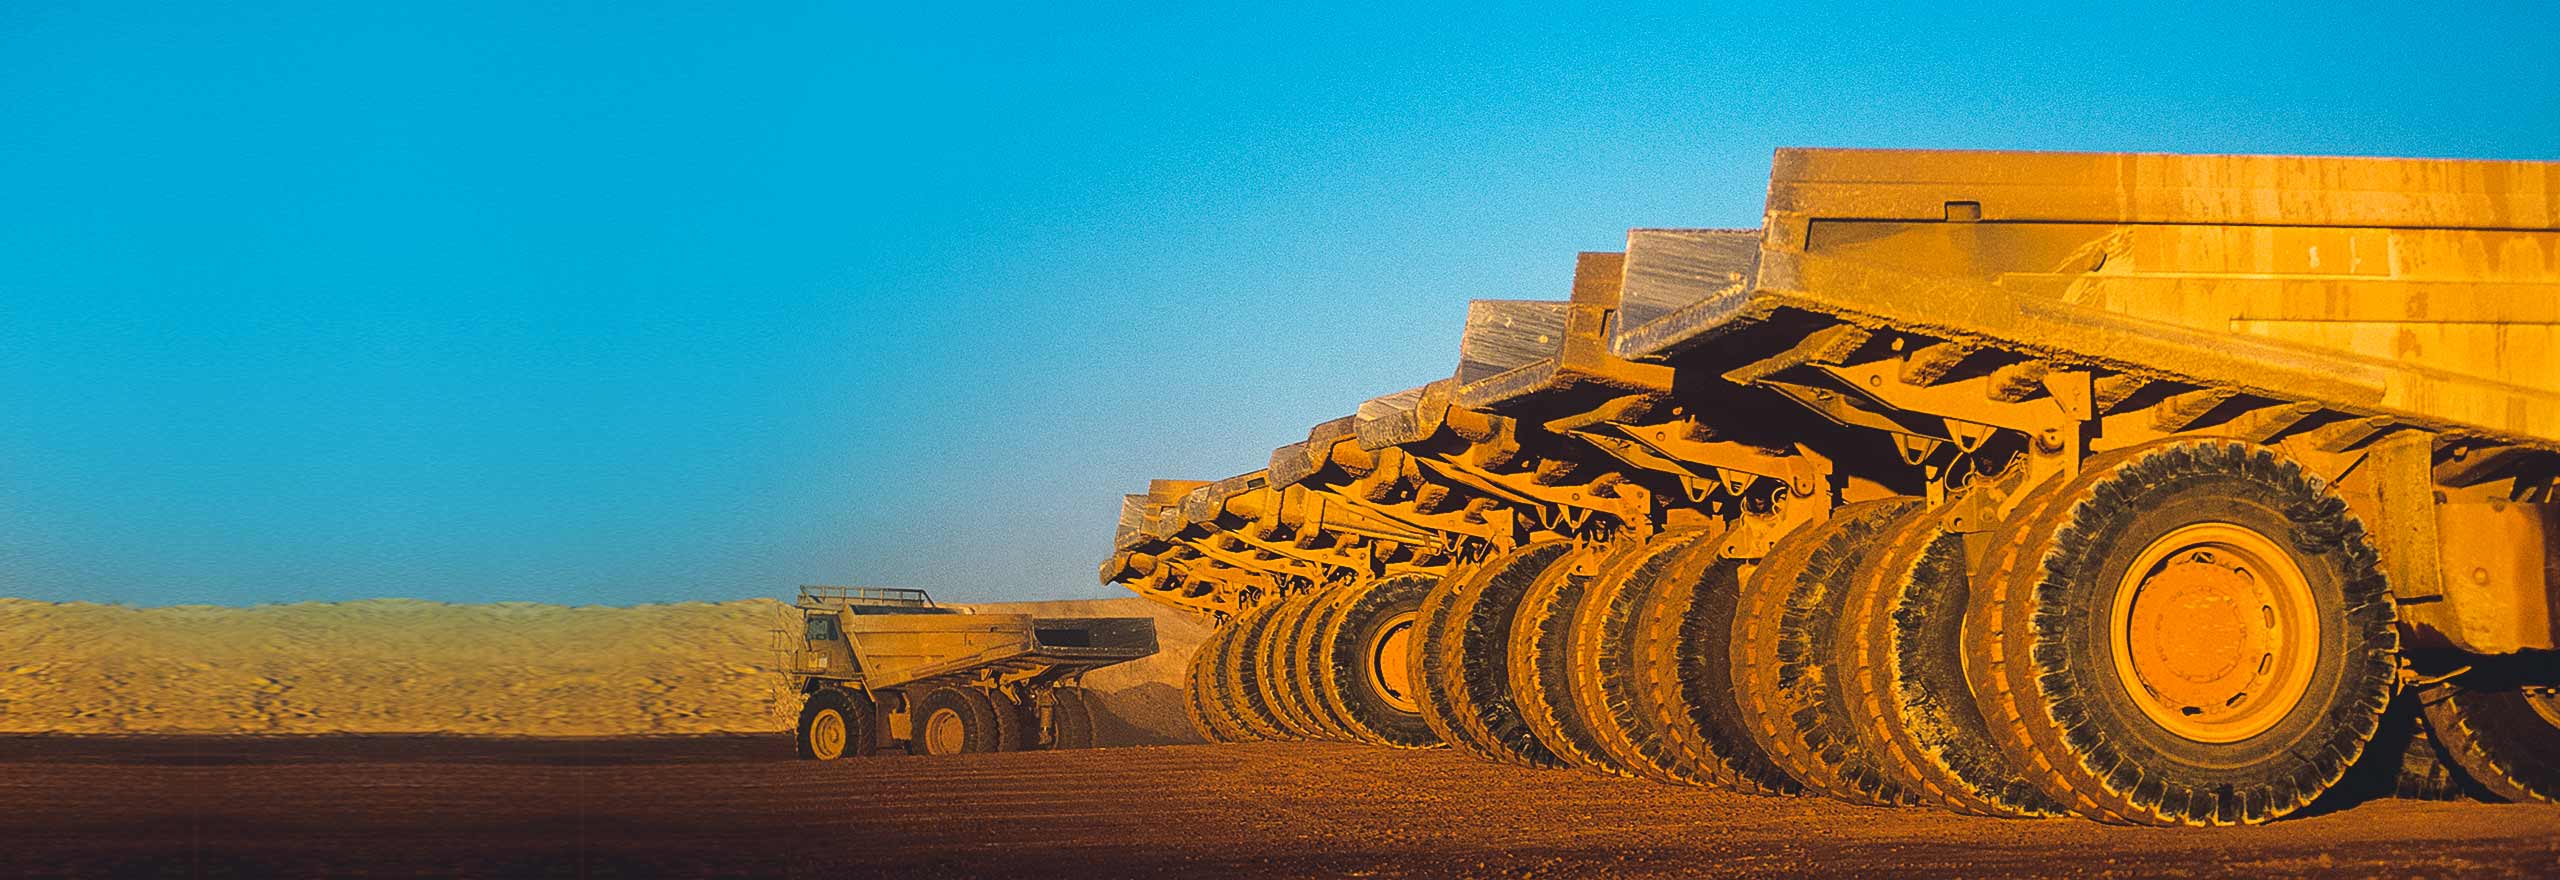 Flotte von Lastwagen mit Hexagons Wartungstechnologie für Bergbauausrüstung